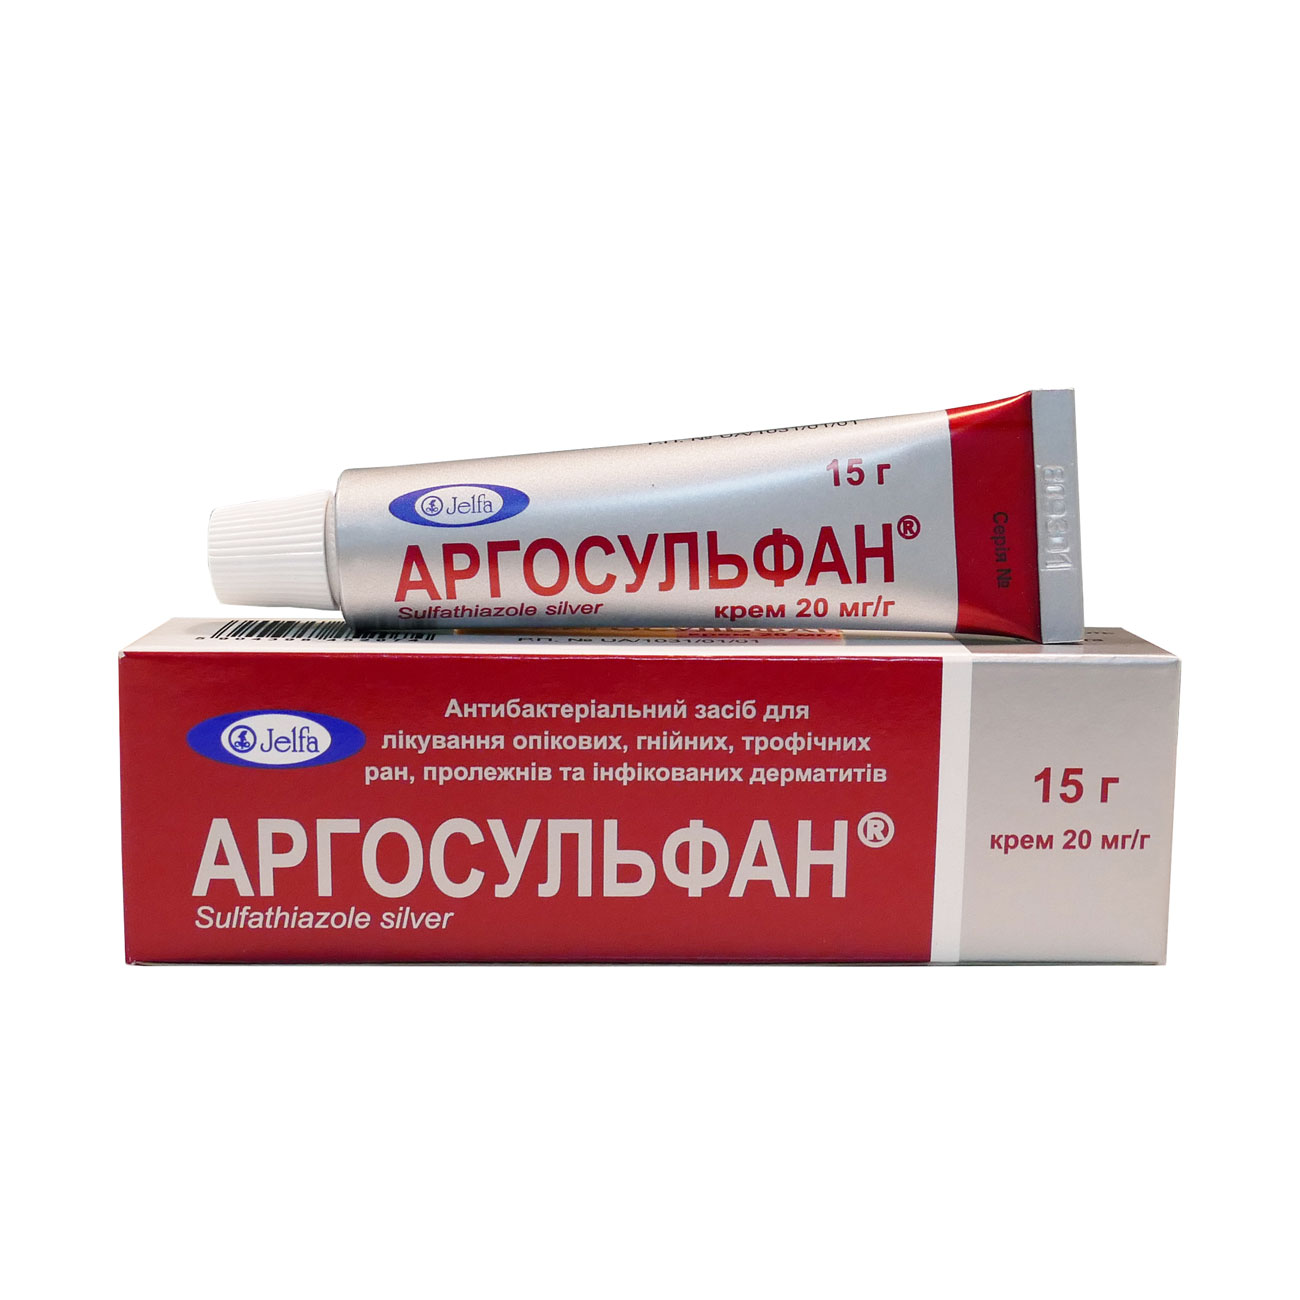 Аргосульфан - крем: інструкція по застосуванню, ціна та аналоги препарату